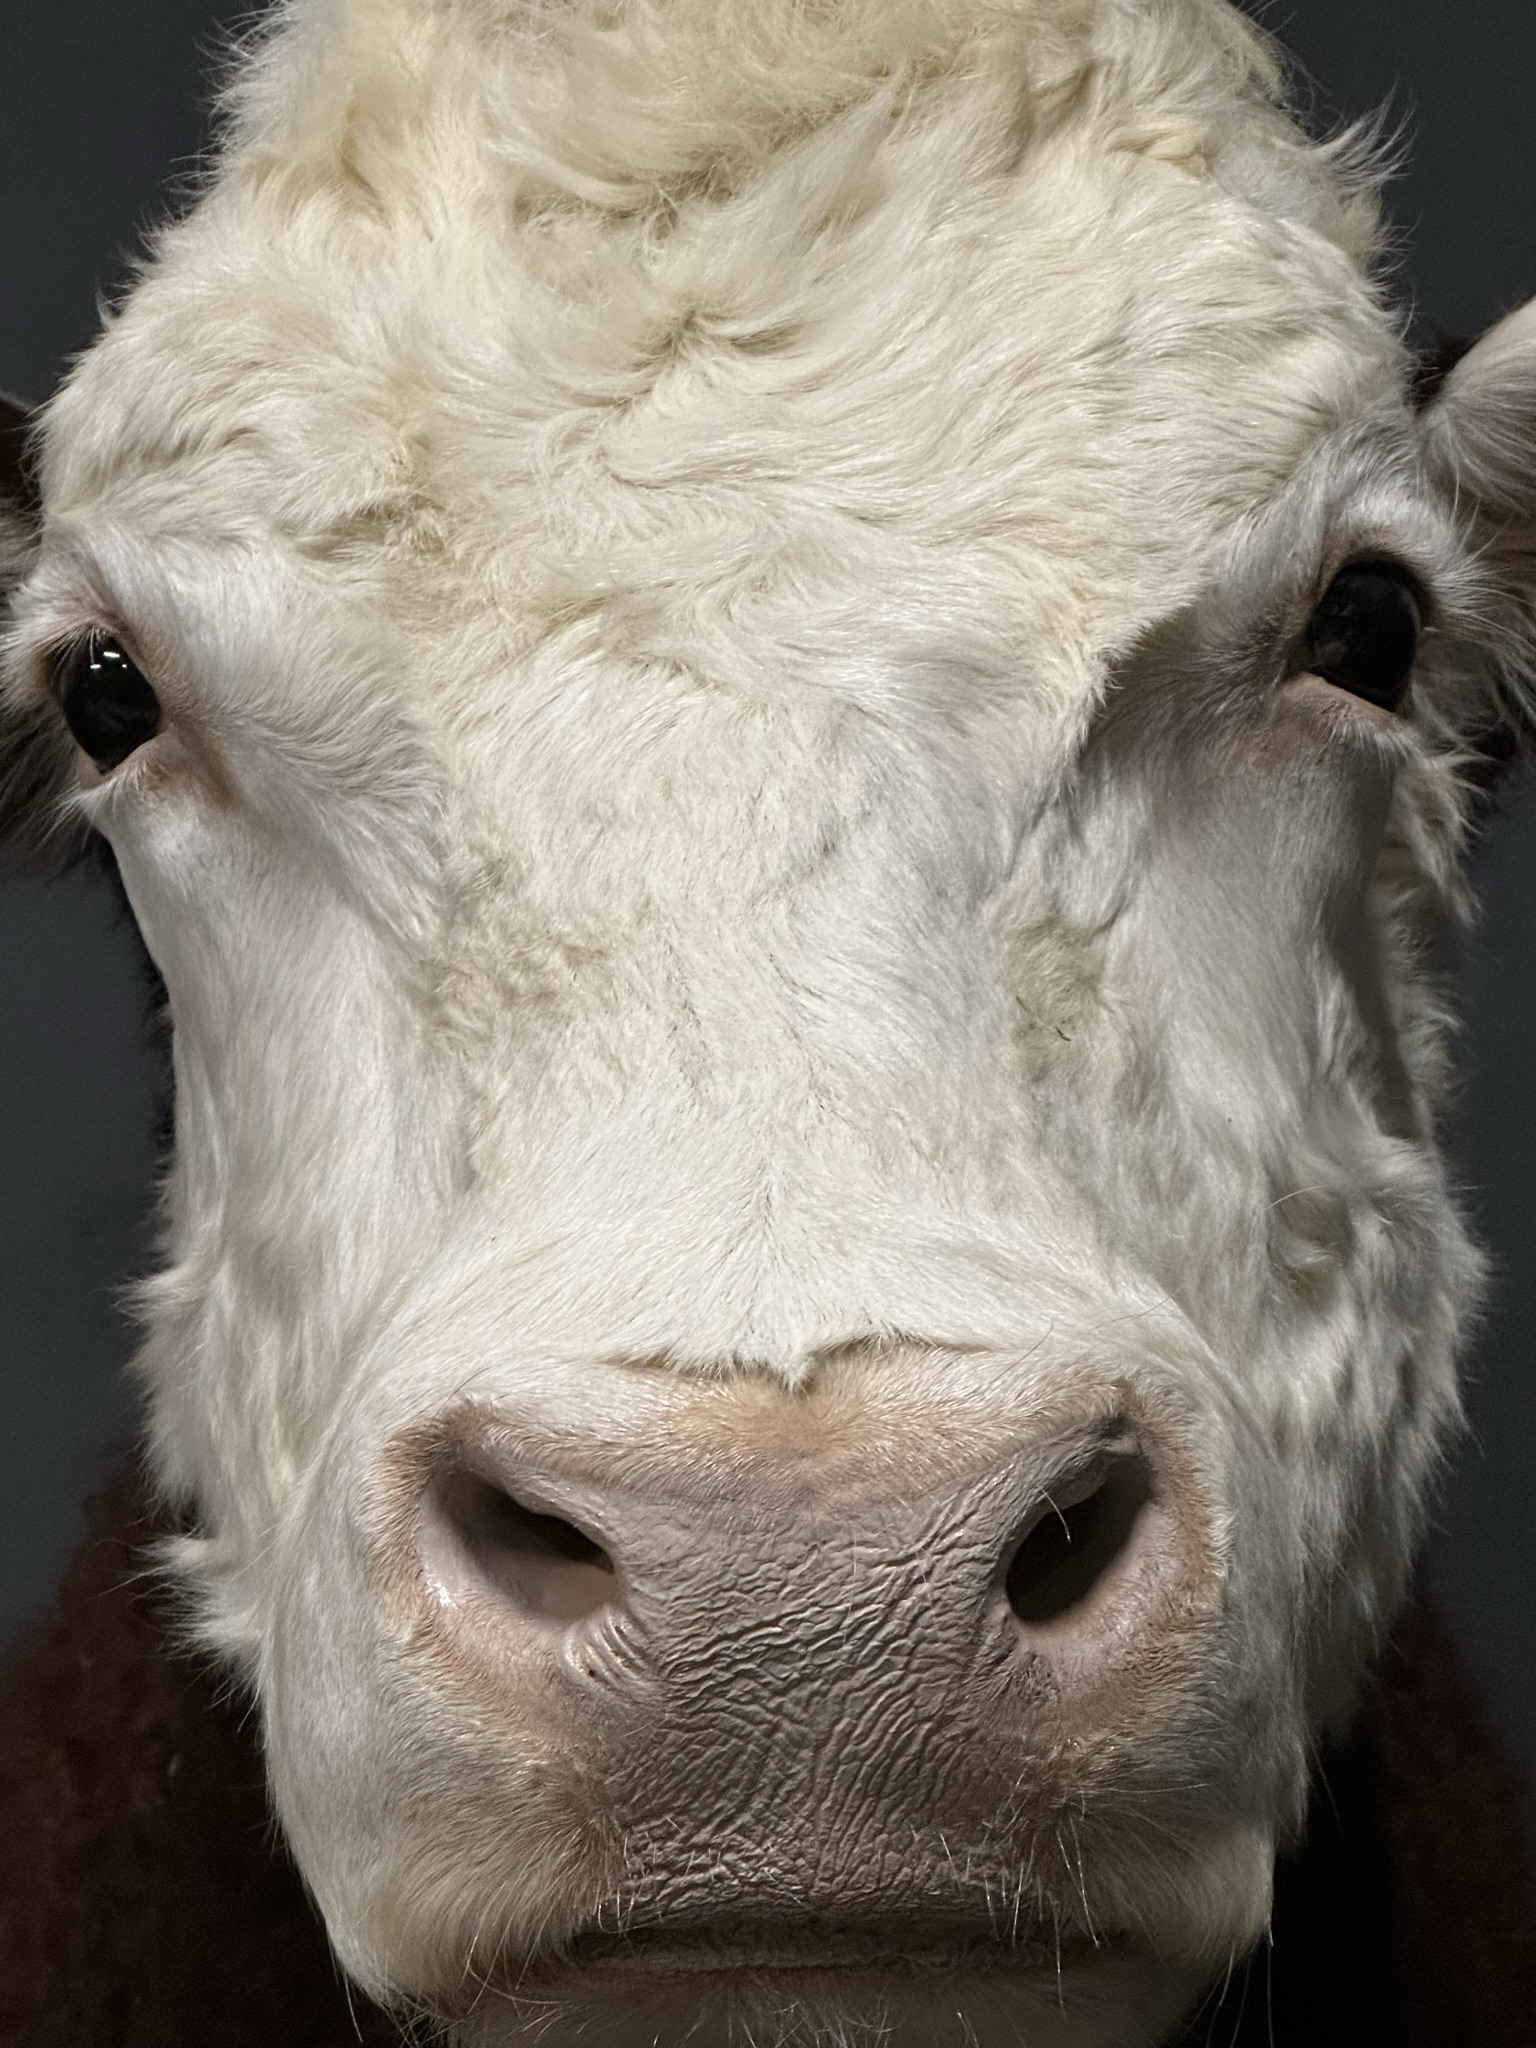 Opgezette kop van een Hereford stier